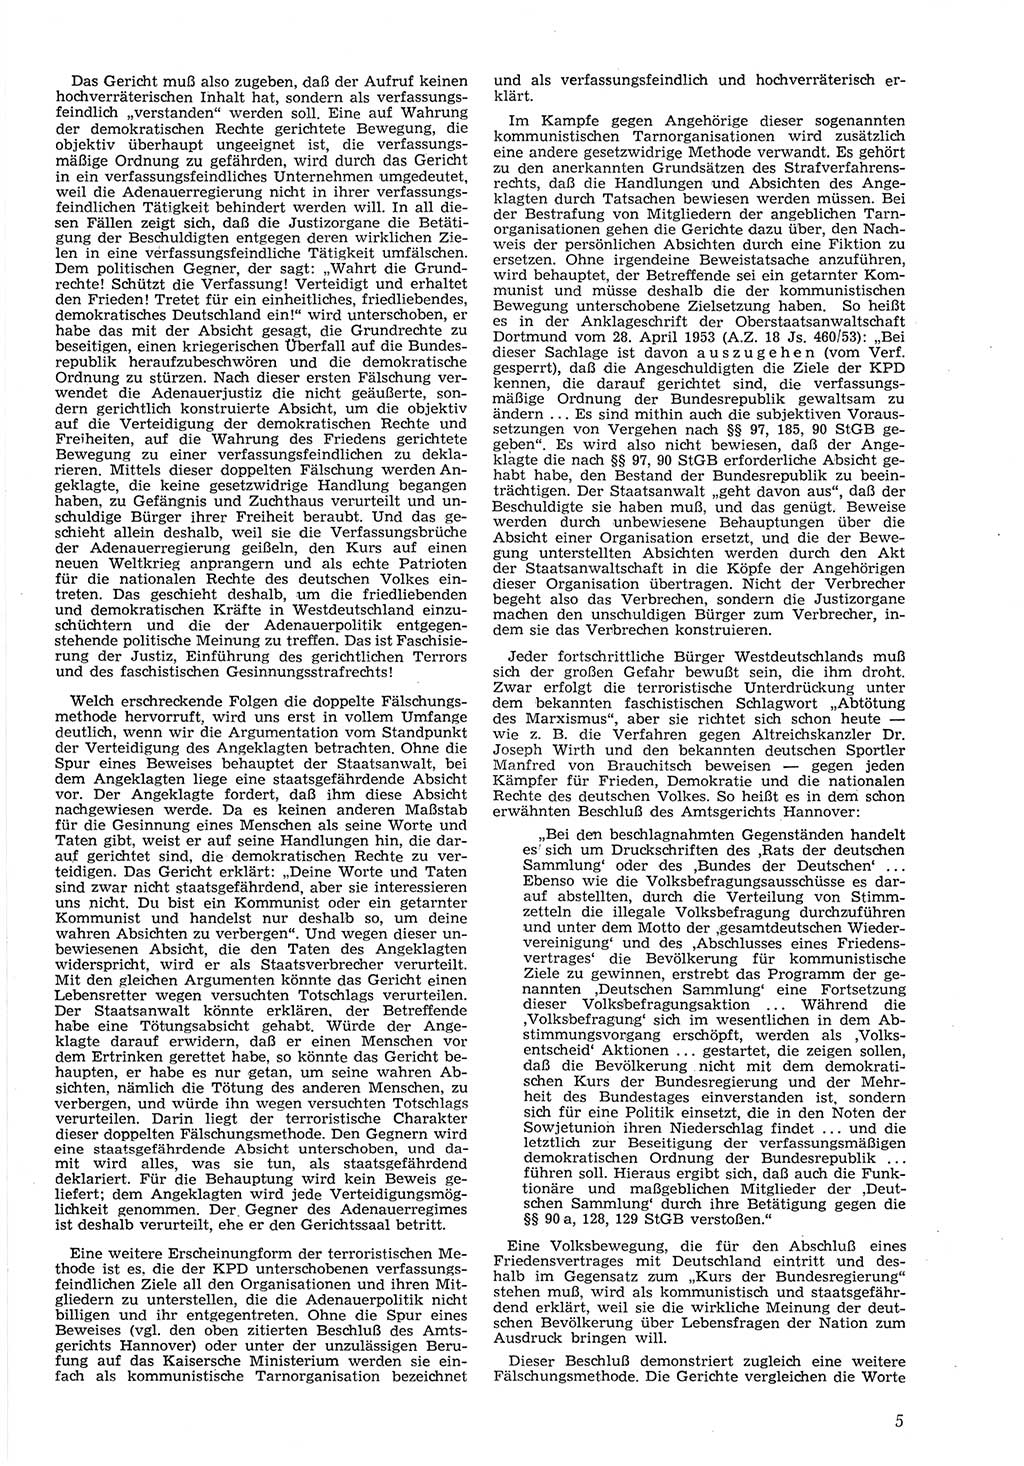 Neue Justiz (NJ), Zeitschrift für Recht und Rechtswissenschaft [Deutsche Demokratische Republik (DDR)], 8. Jahrgang 1954, Seite 5 (NJ DDR 1954, S. 5)